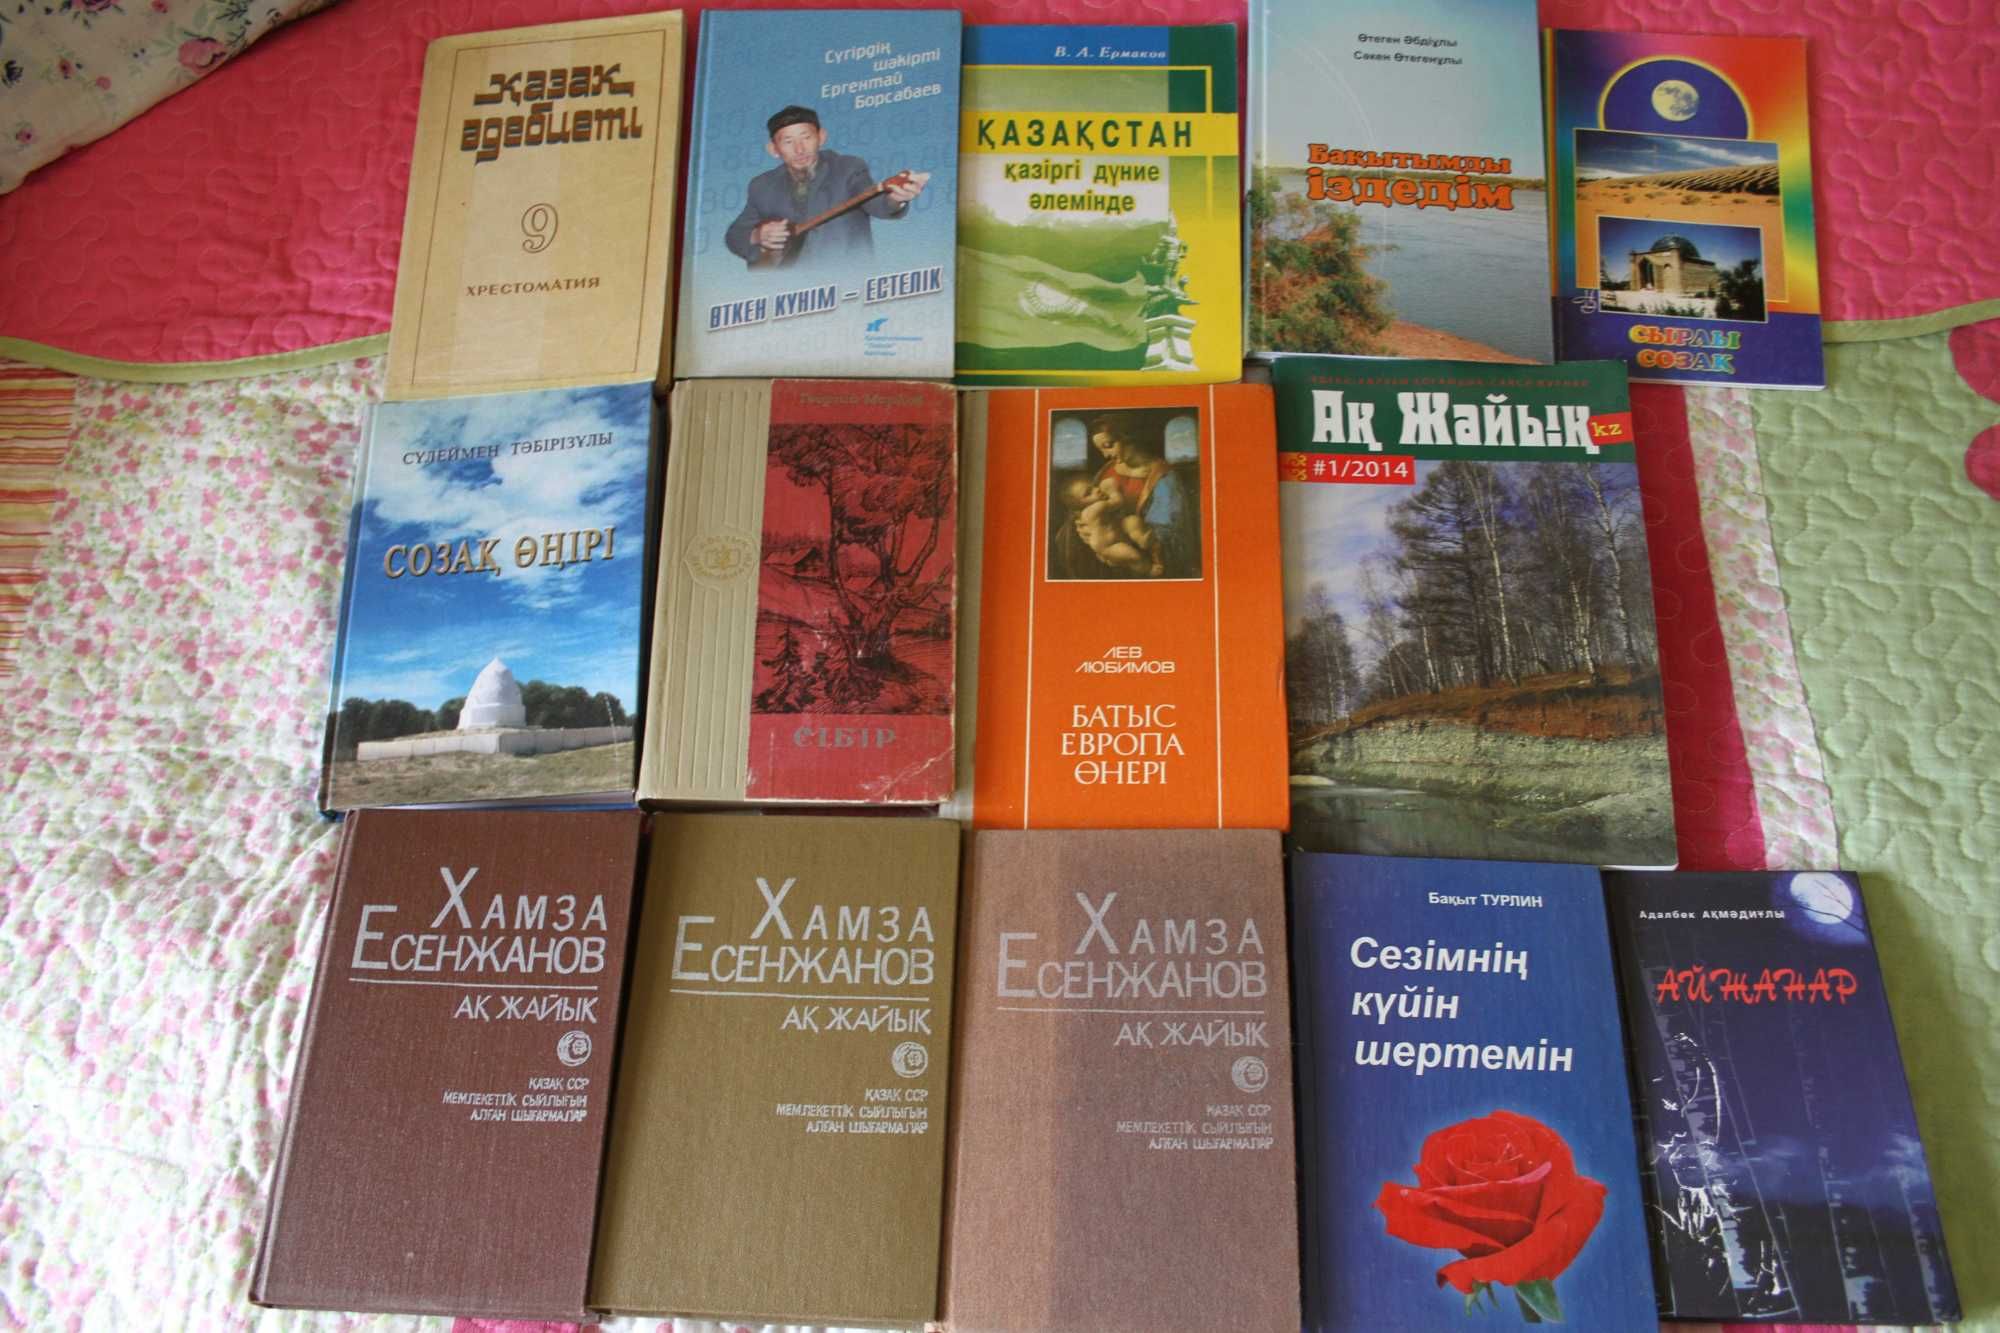 Книги на казахском языке. Есенжанов Акжайык